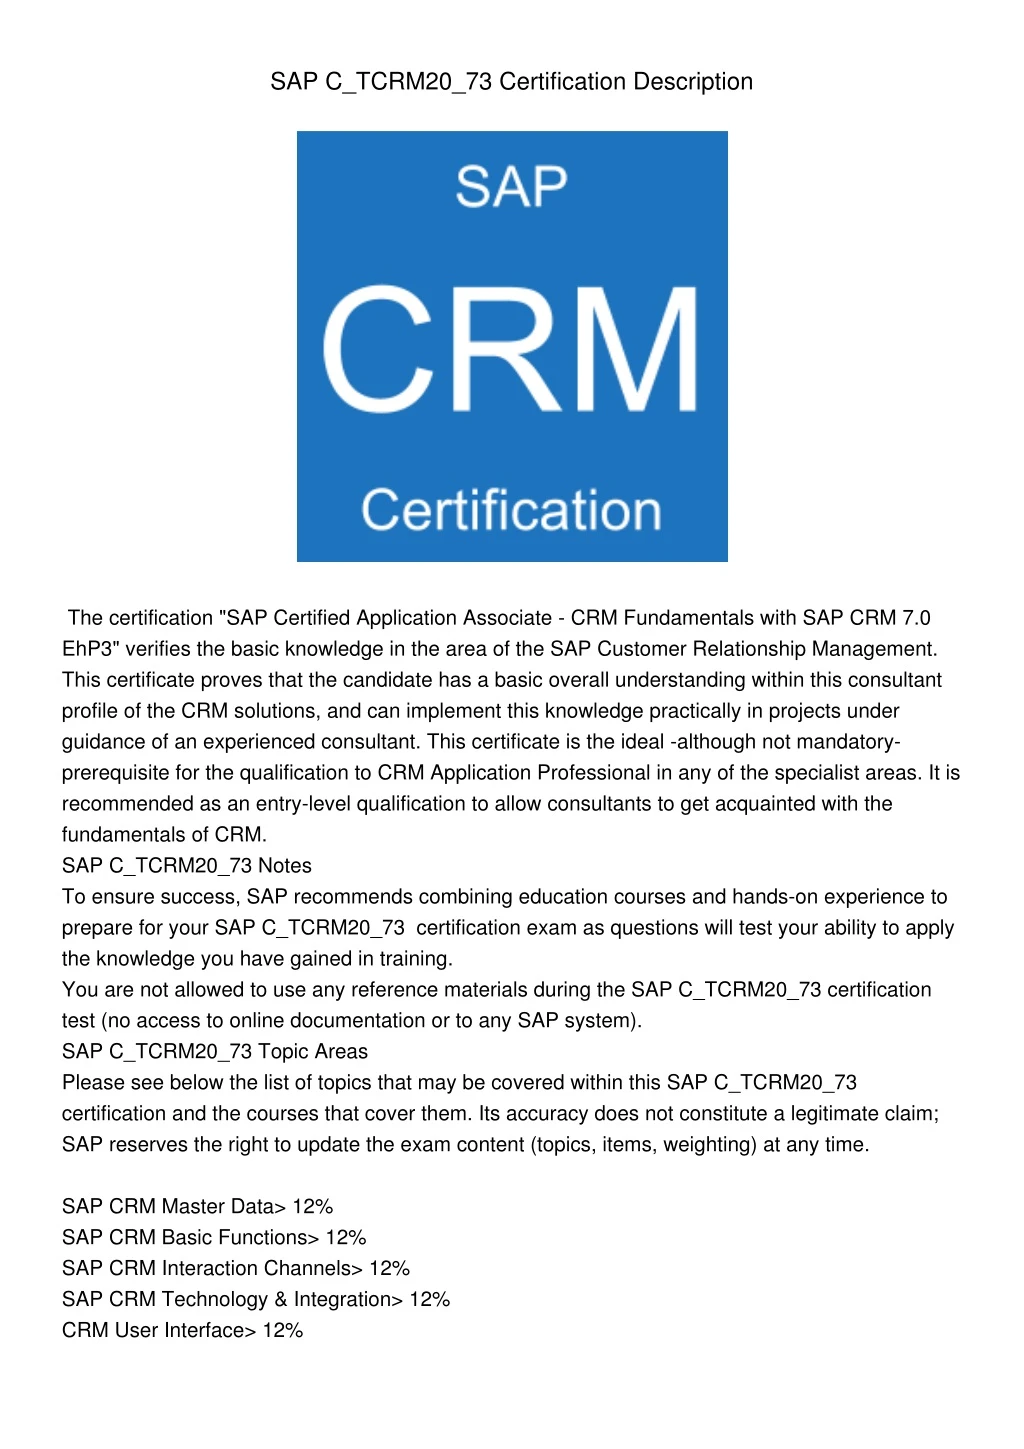 sap c tcrm20 73 certification description